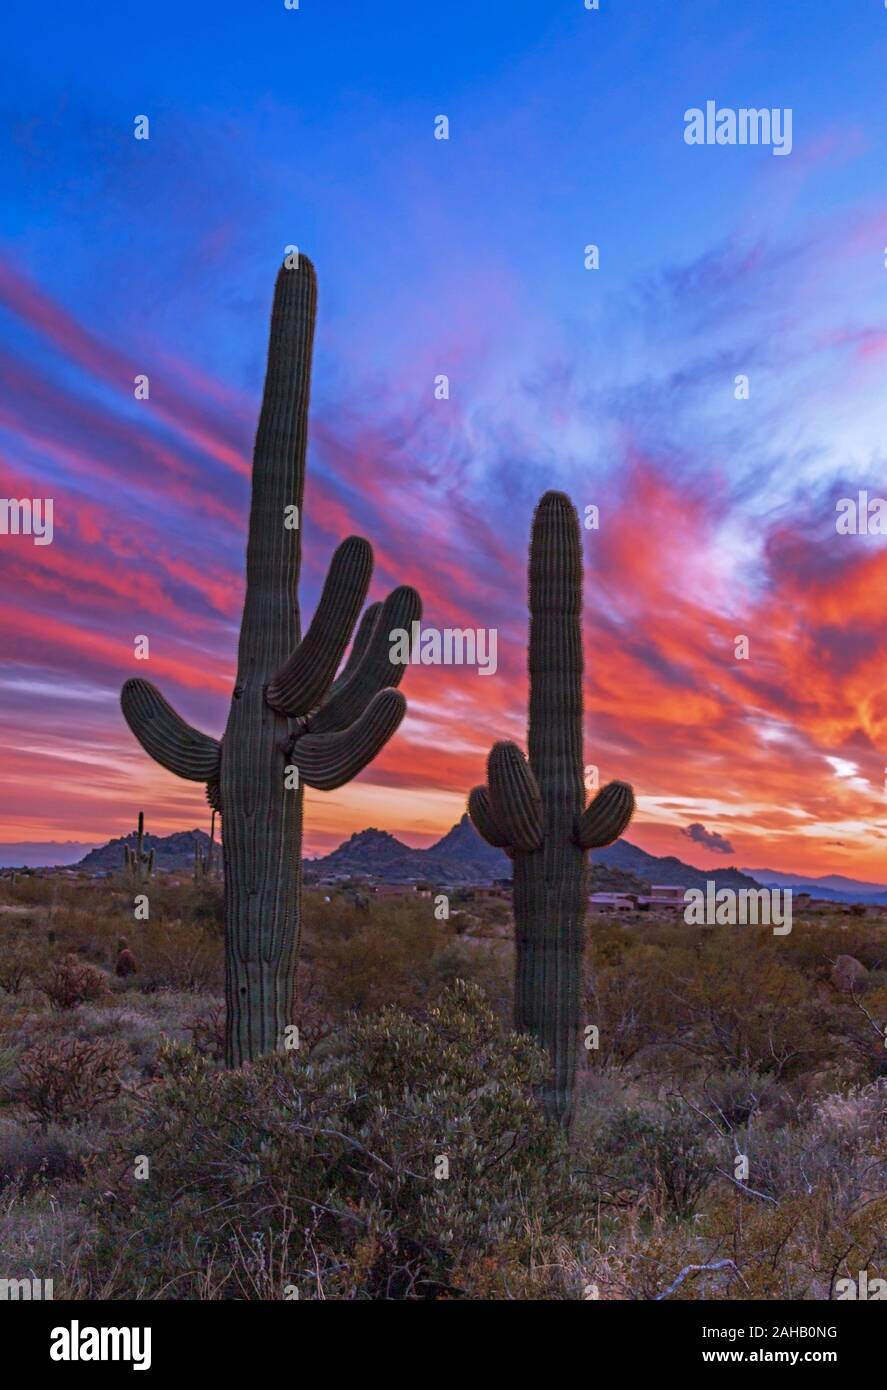 Bunte und lebendige Sonnenuntergang Himmel mit zwei Saguaro Kaktus in den Vordergrund Scottsdlae, AZ. Stockfoto